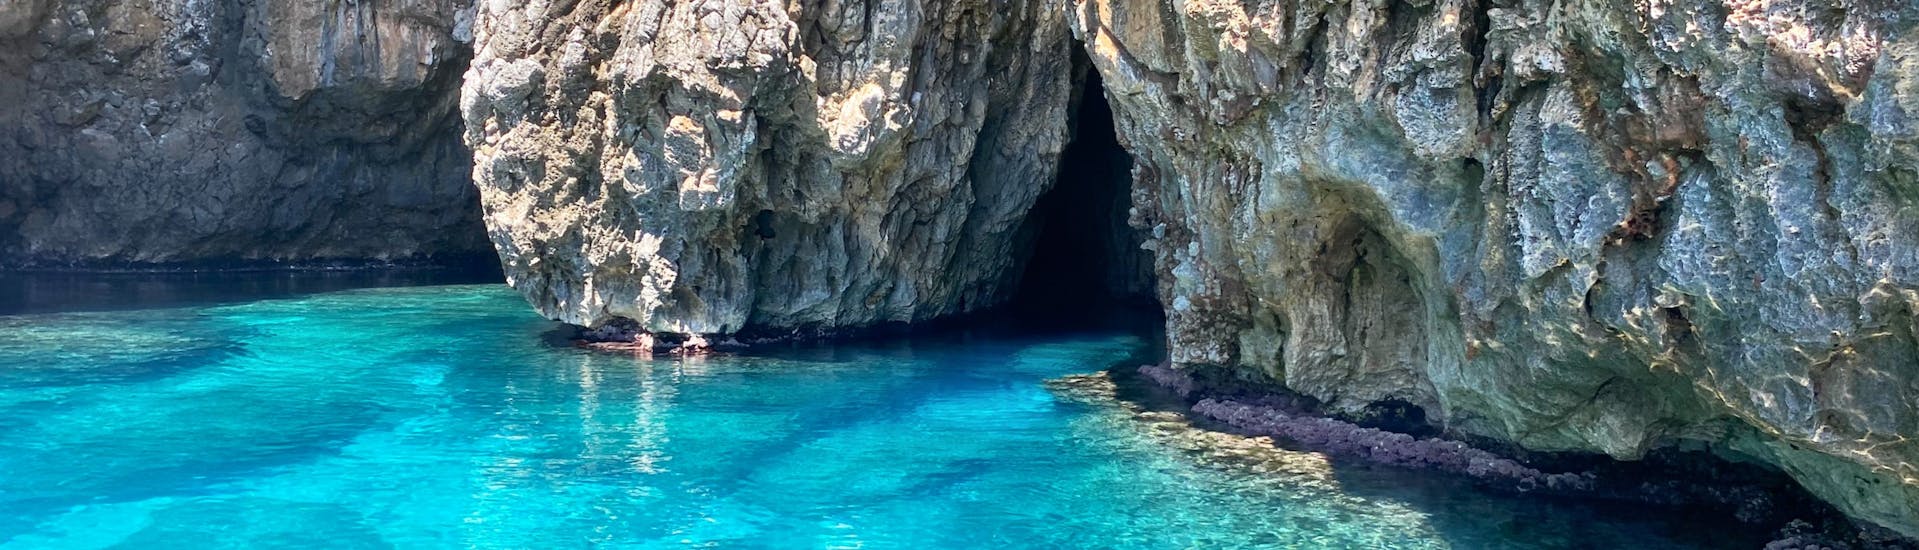 Bootstour zu den Grotten von Santa Maria di Leuca mit Schnorcheln und Aperitif.